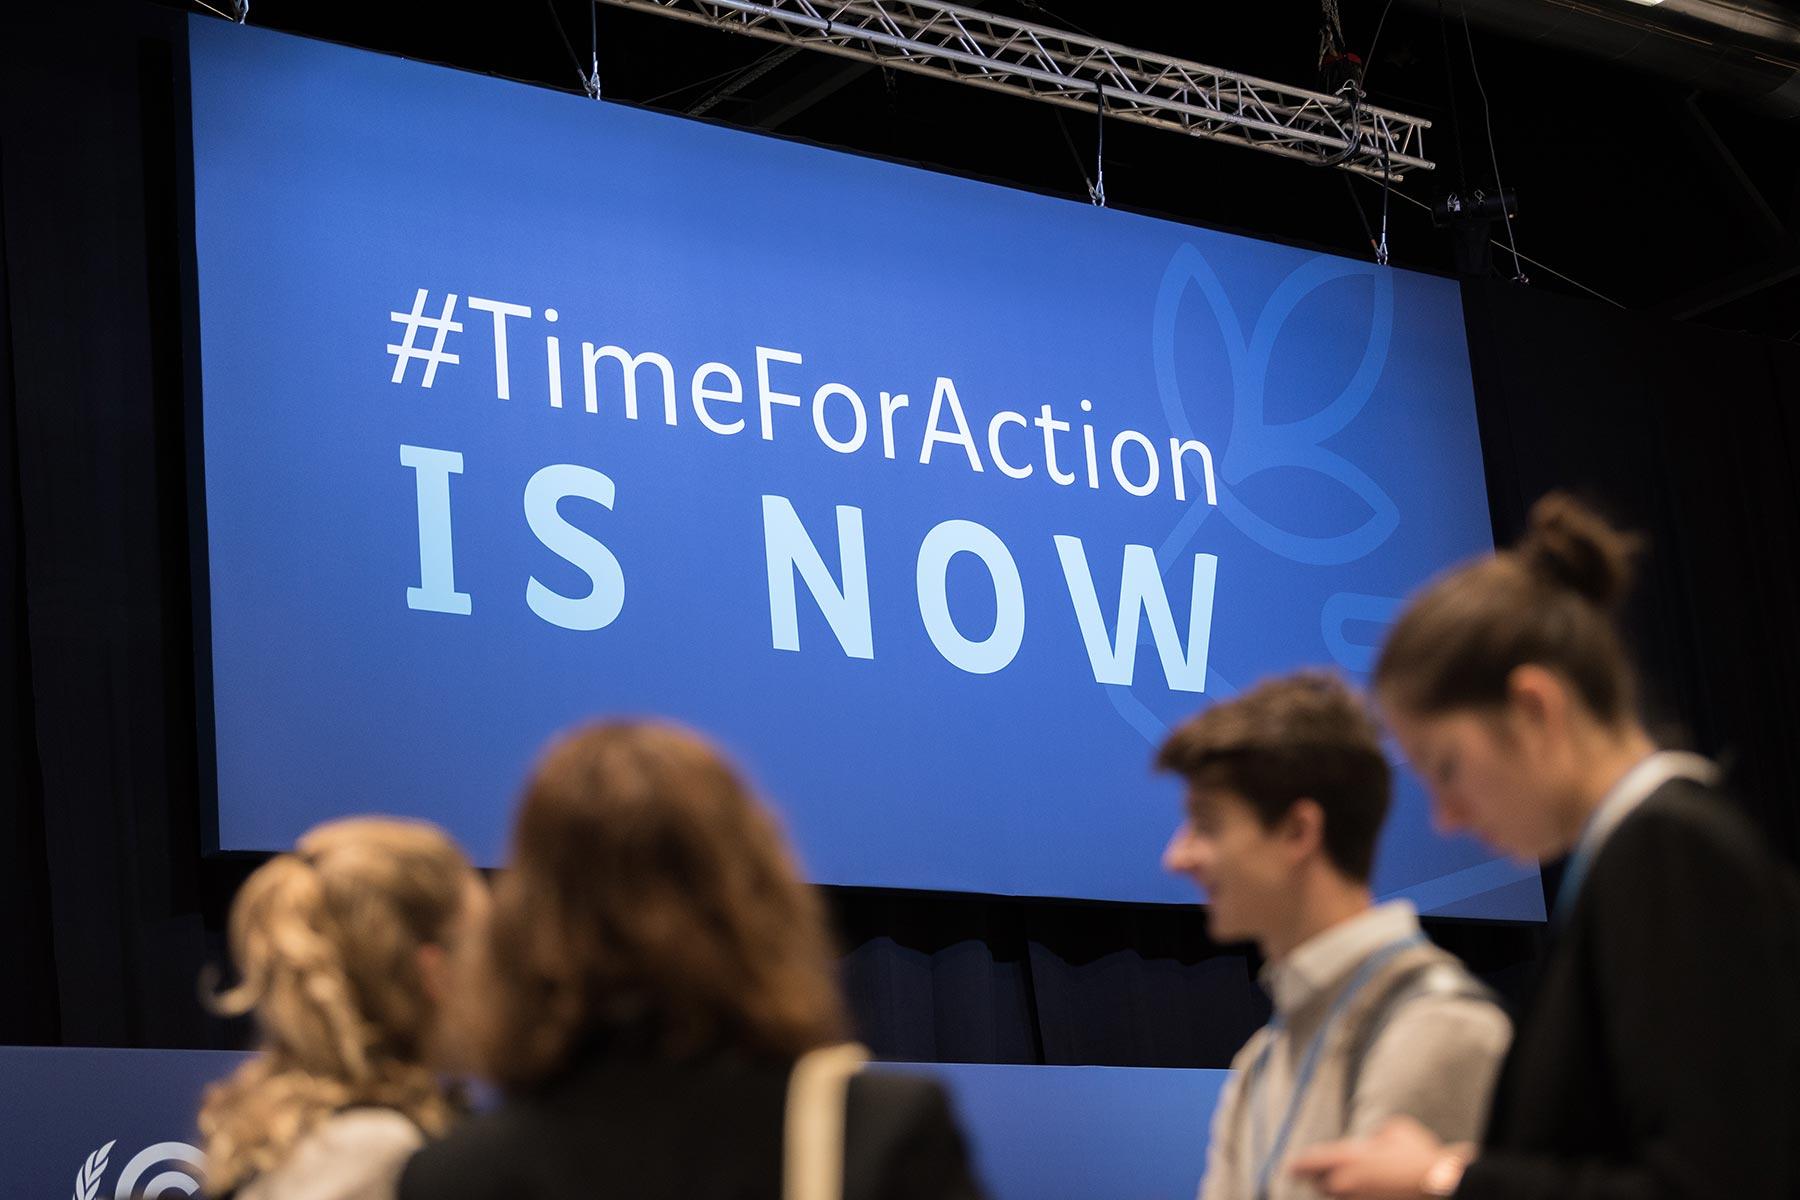 Junge Menschen bei der COP25 in Madrid, Spanien, im Jahr 2019. Der Slogan "#TimeForAction is now" hat nichts von seiner Dringlichkeit verloren. Foto: LWB/Albin Hillert